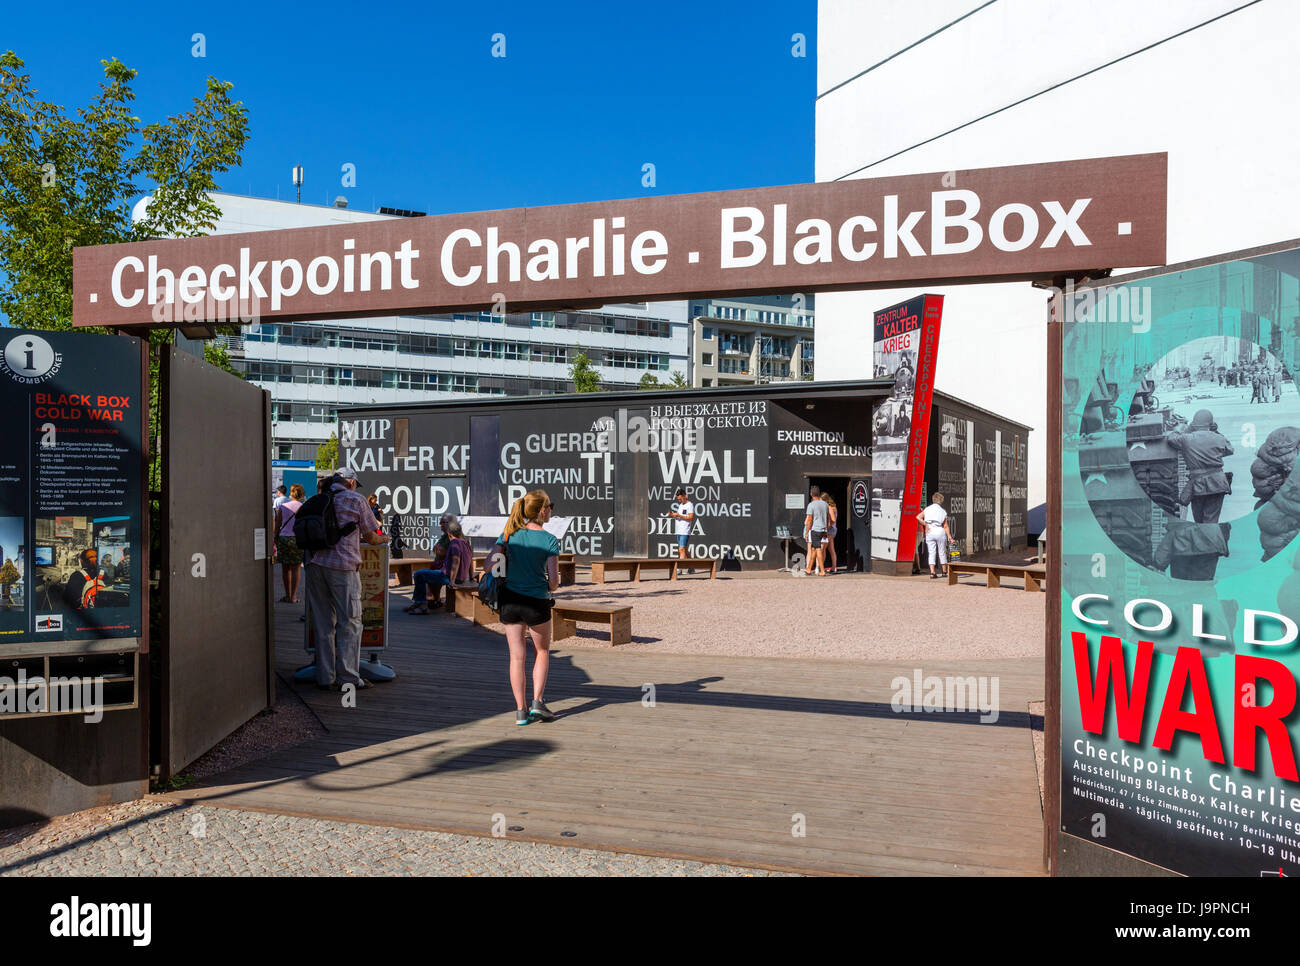 Eingang zum Black-Box, ein Informations-Pavillon über die Geschichte des  Checkpoint Charlie und der Berliner Mauer, Berlin, Deutschland  Stockfotografie - Alamy